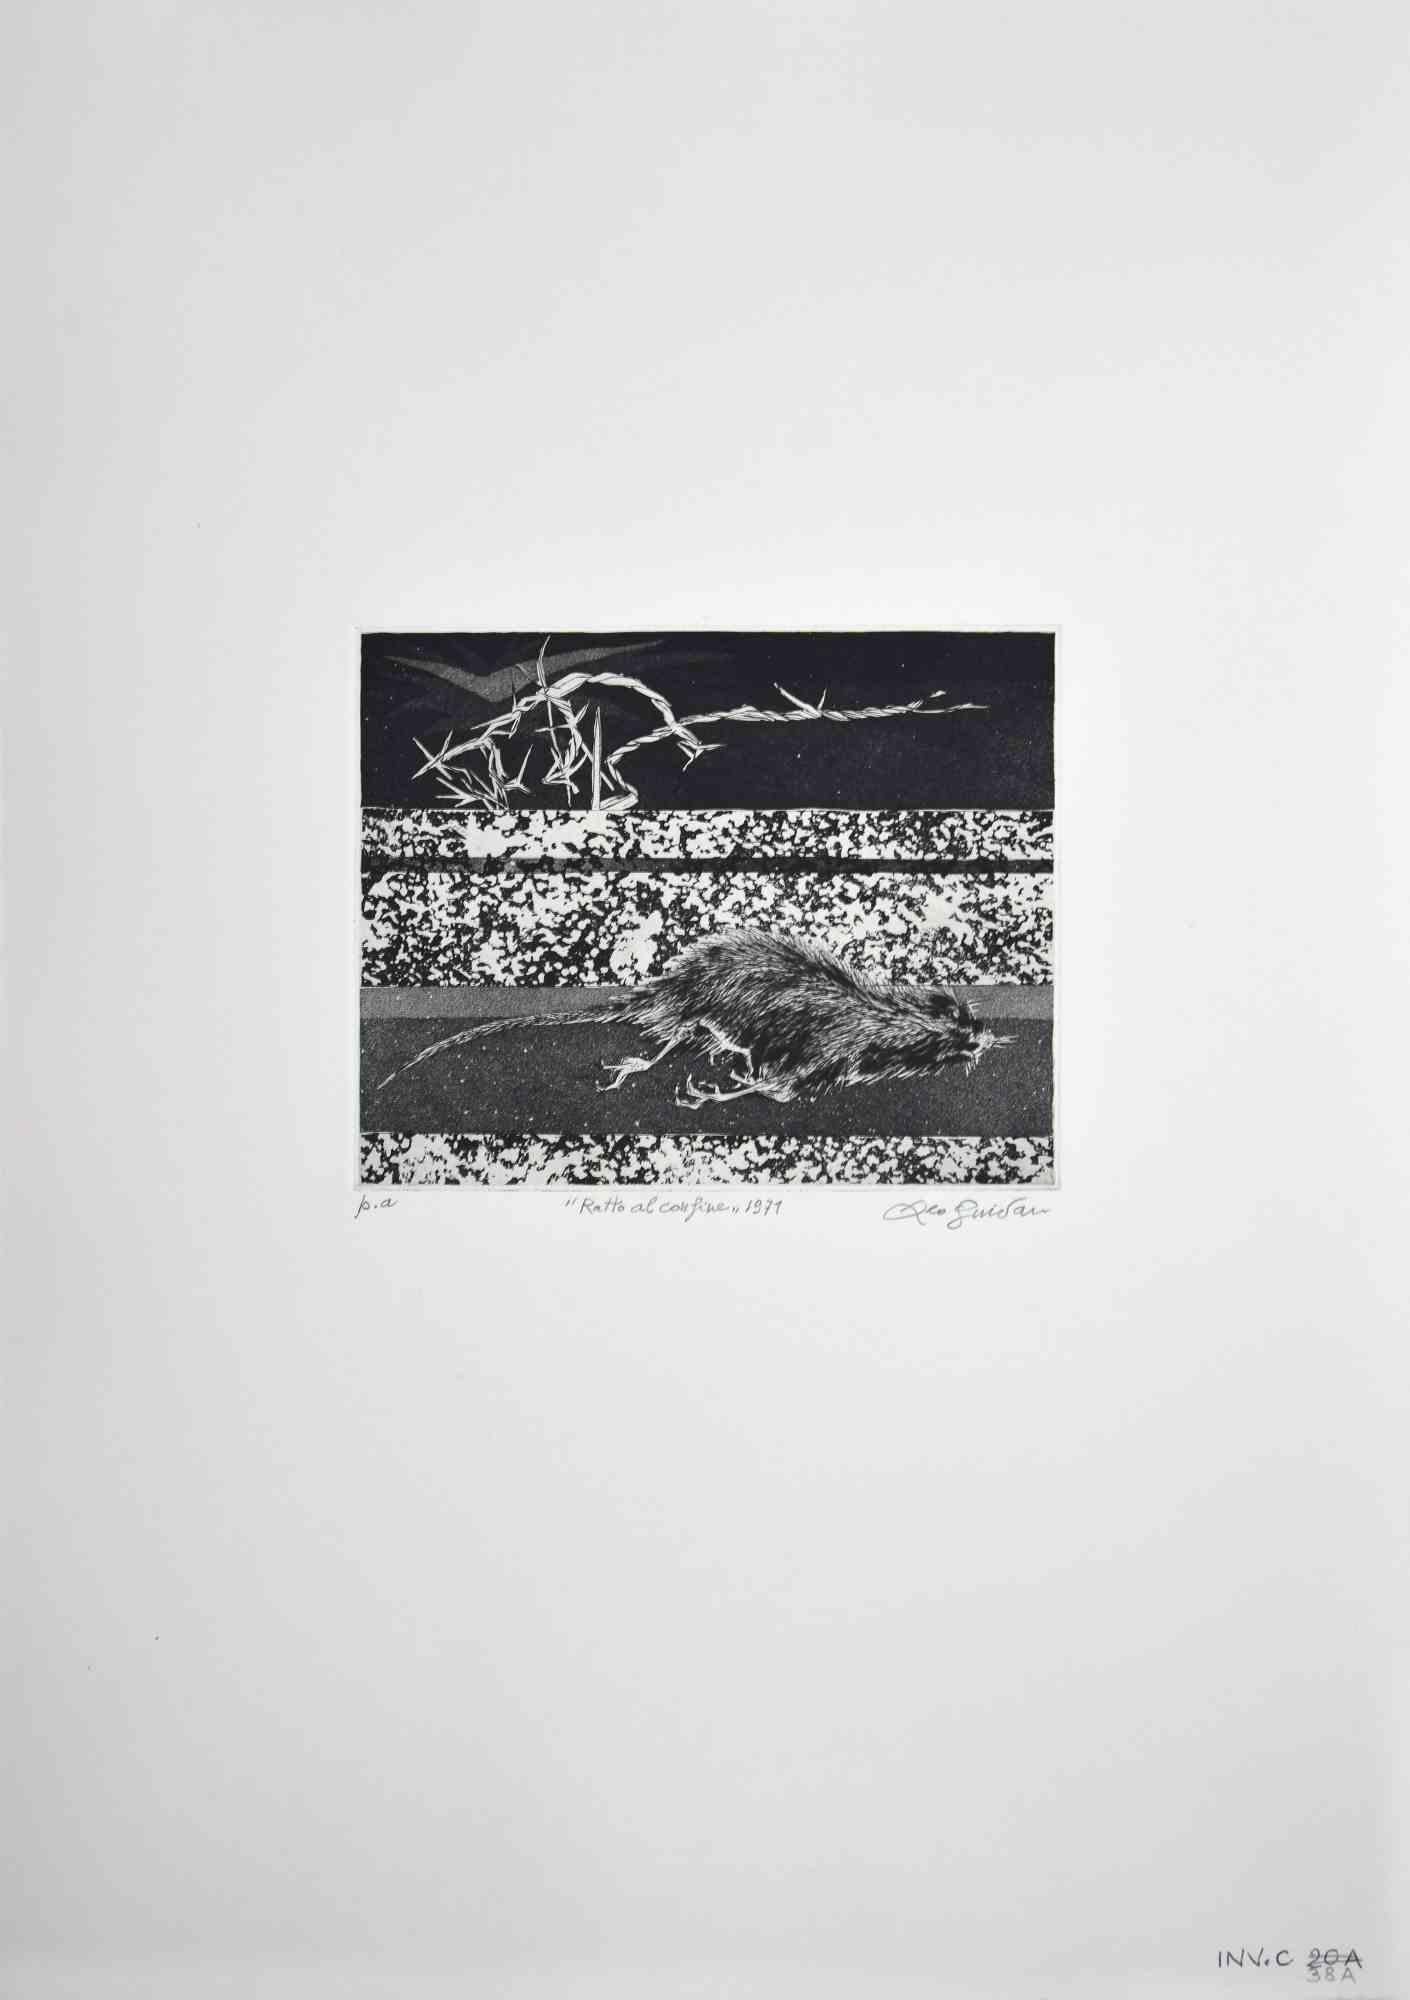 Rat on the Border ist ein originales Kunstwerk  im Jahr 1971  des italienischen zeitgenössischen Künstlers Leo Guida (1992 - 2017).

Farbige Originalradierung auf elfenbeinfarbenem Karton.

Am unteren Rand handsigniert, betitelt und datiert.

In